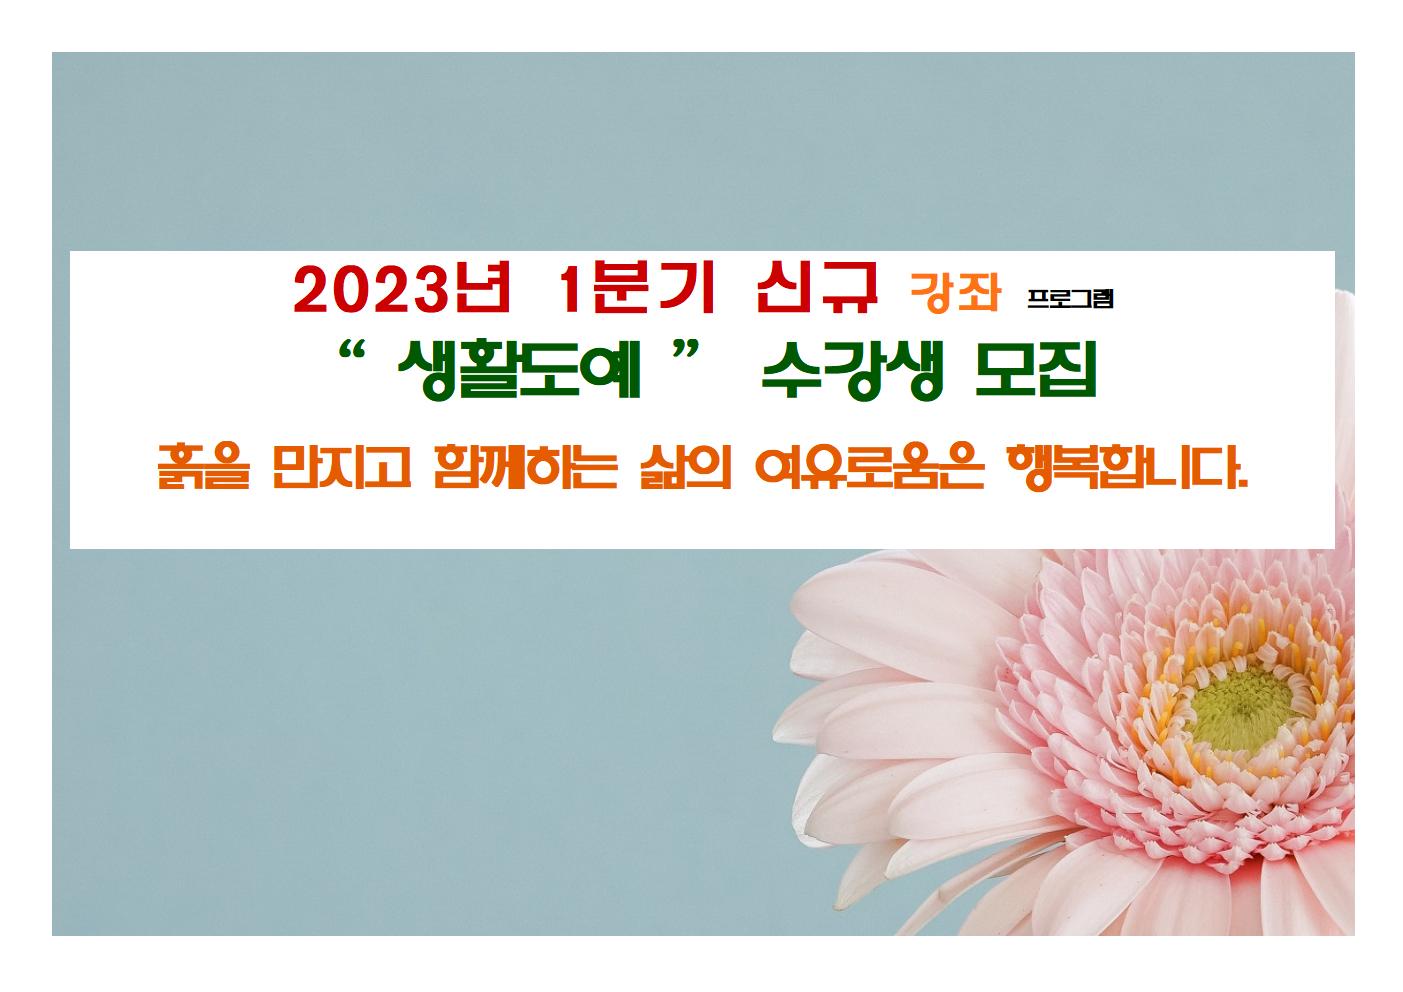 신규 강좌 (2~3월)  "생활도예"